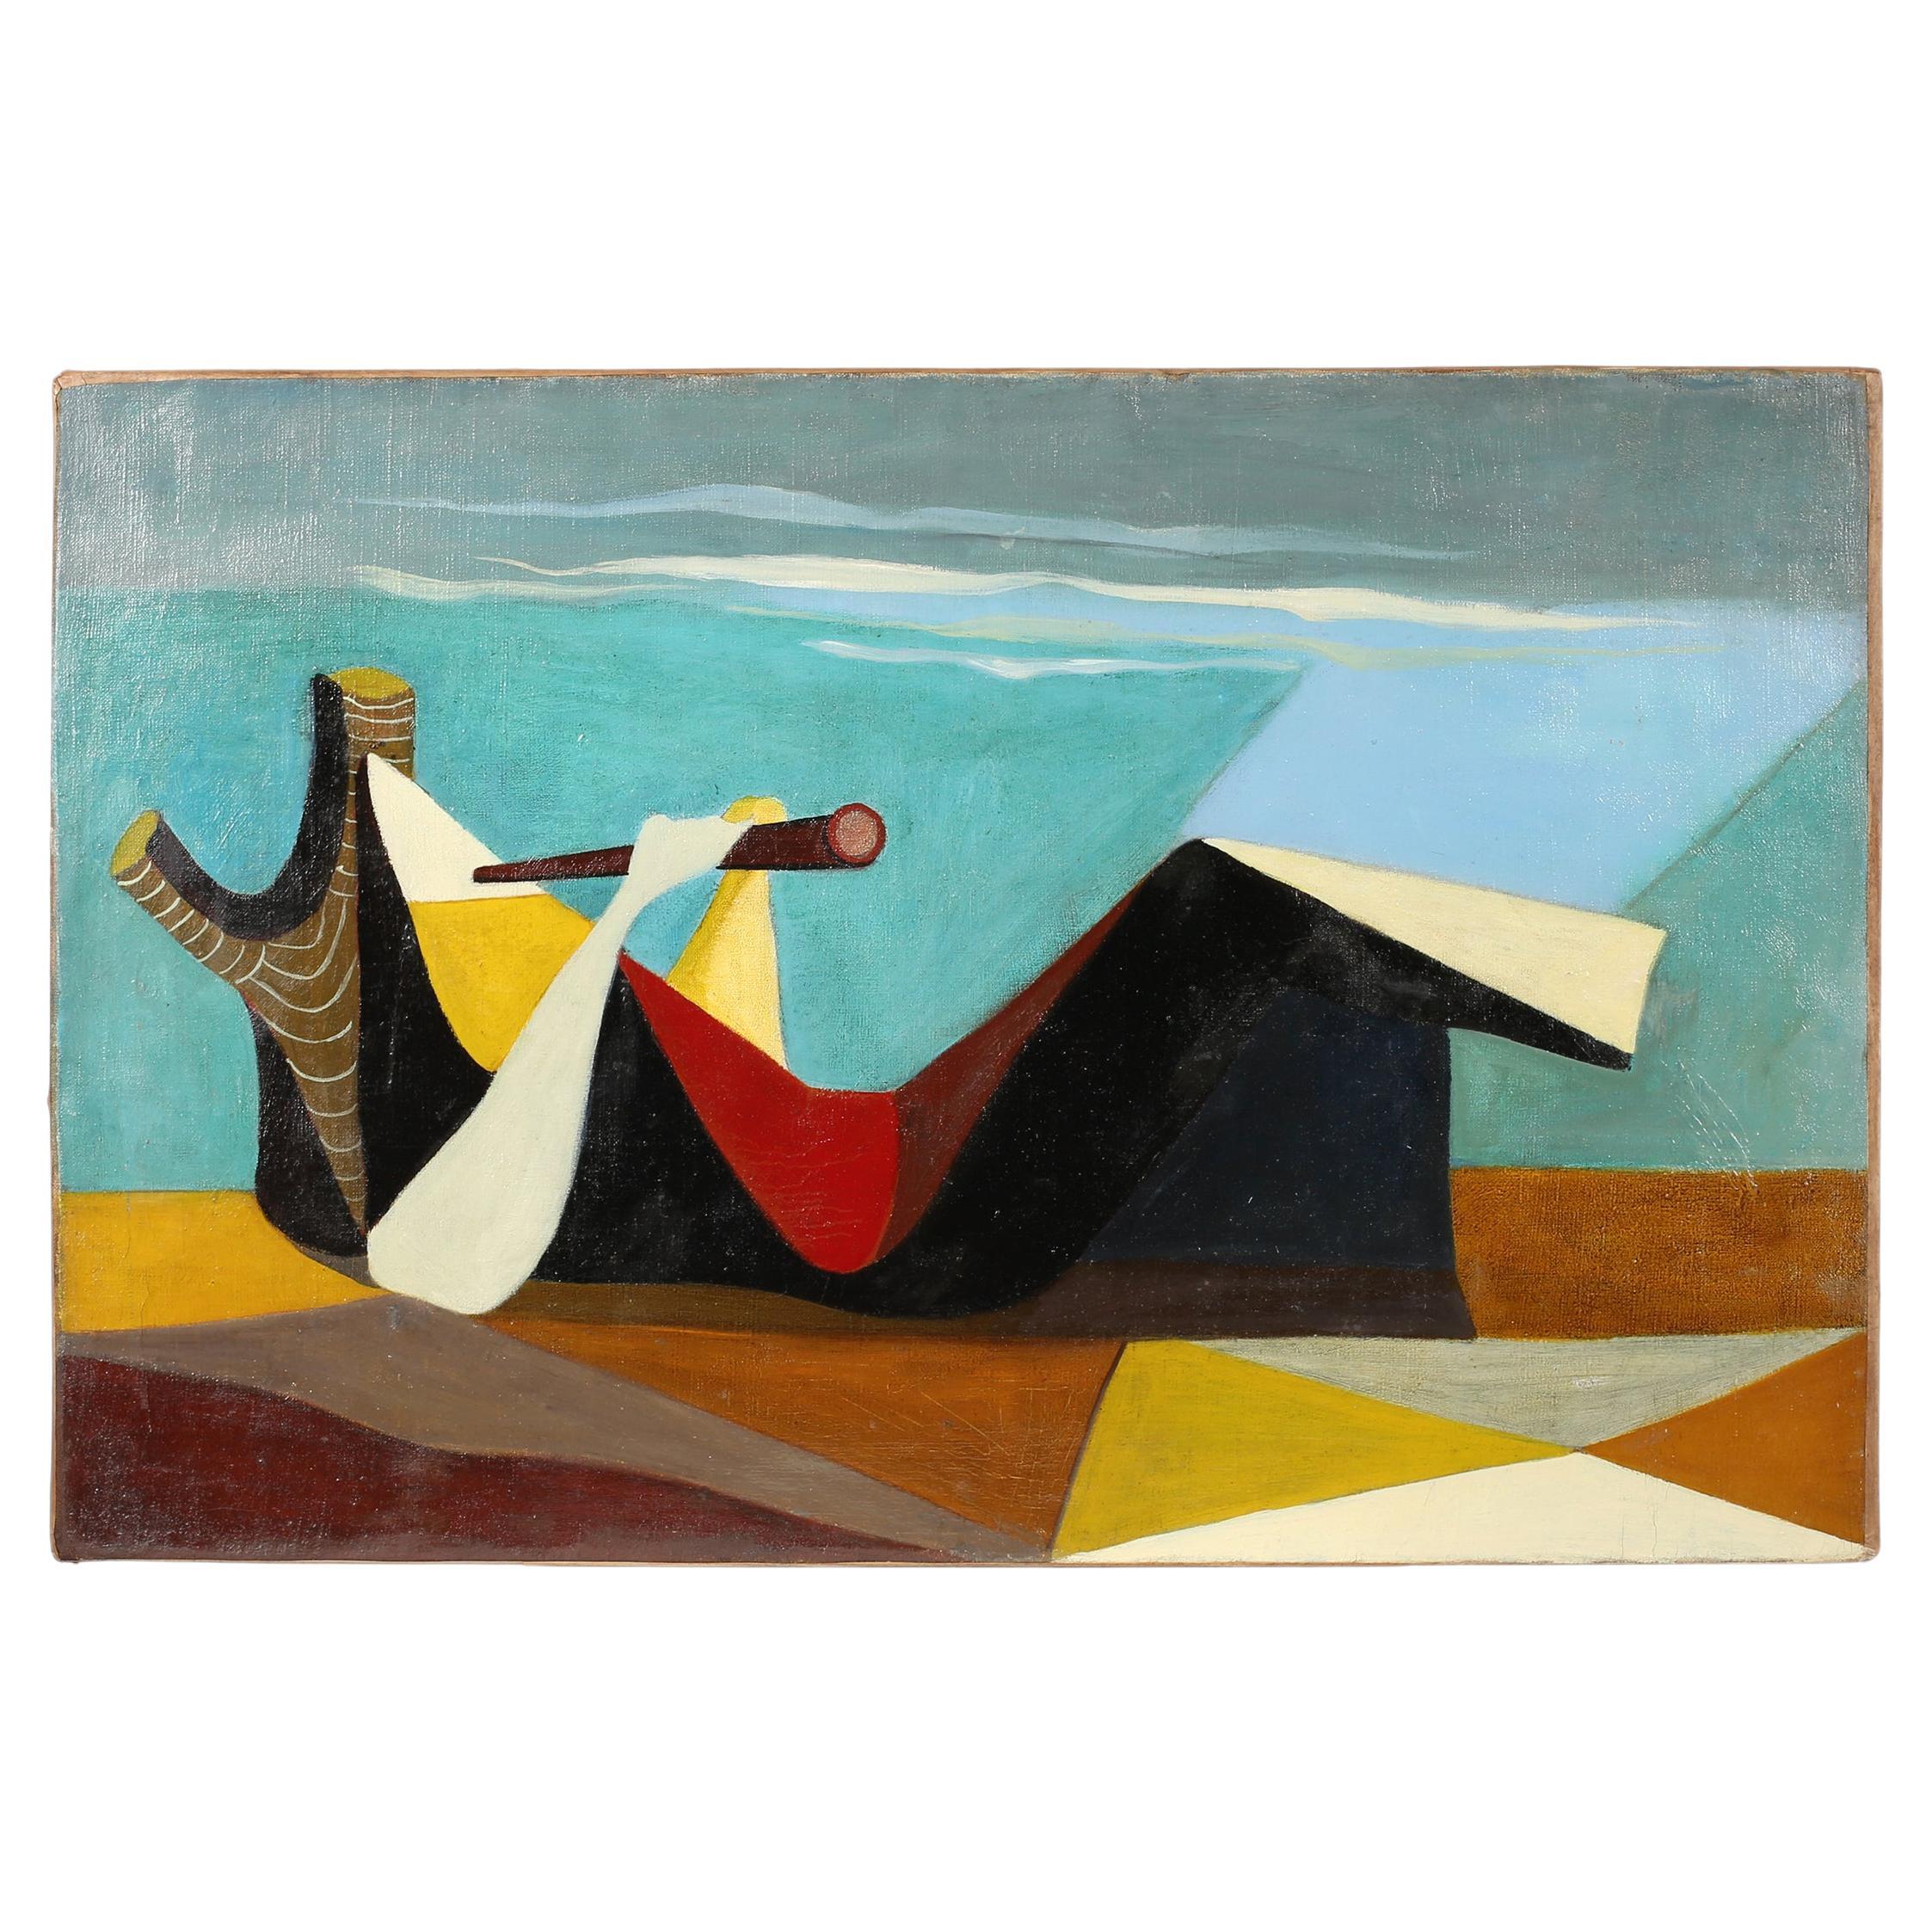 Peinture à l'huile sur toile cubiste surréaliste française du début du 20e siècle, vers 1930